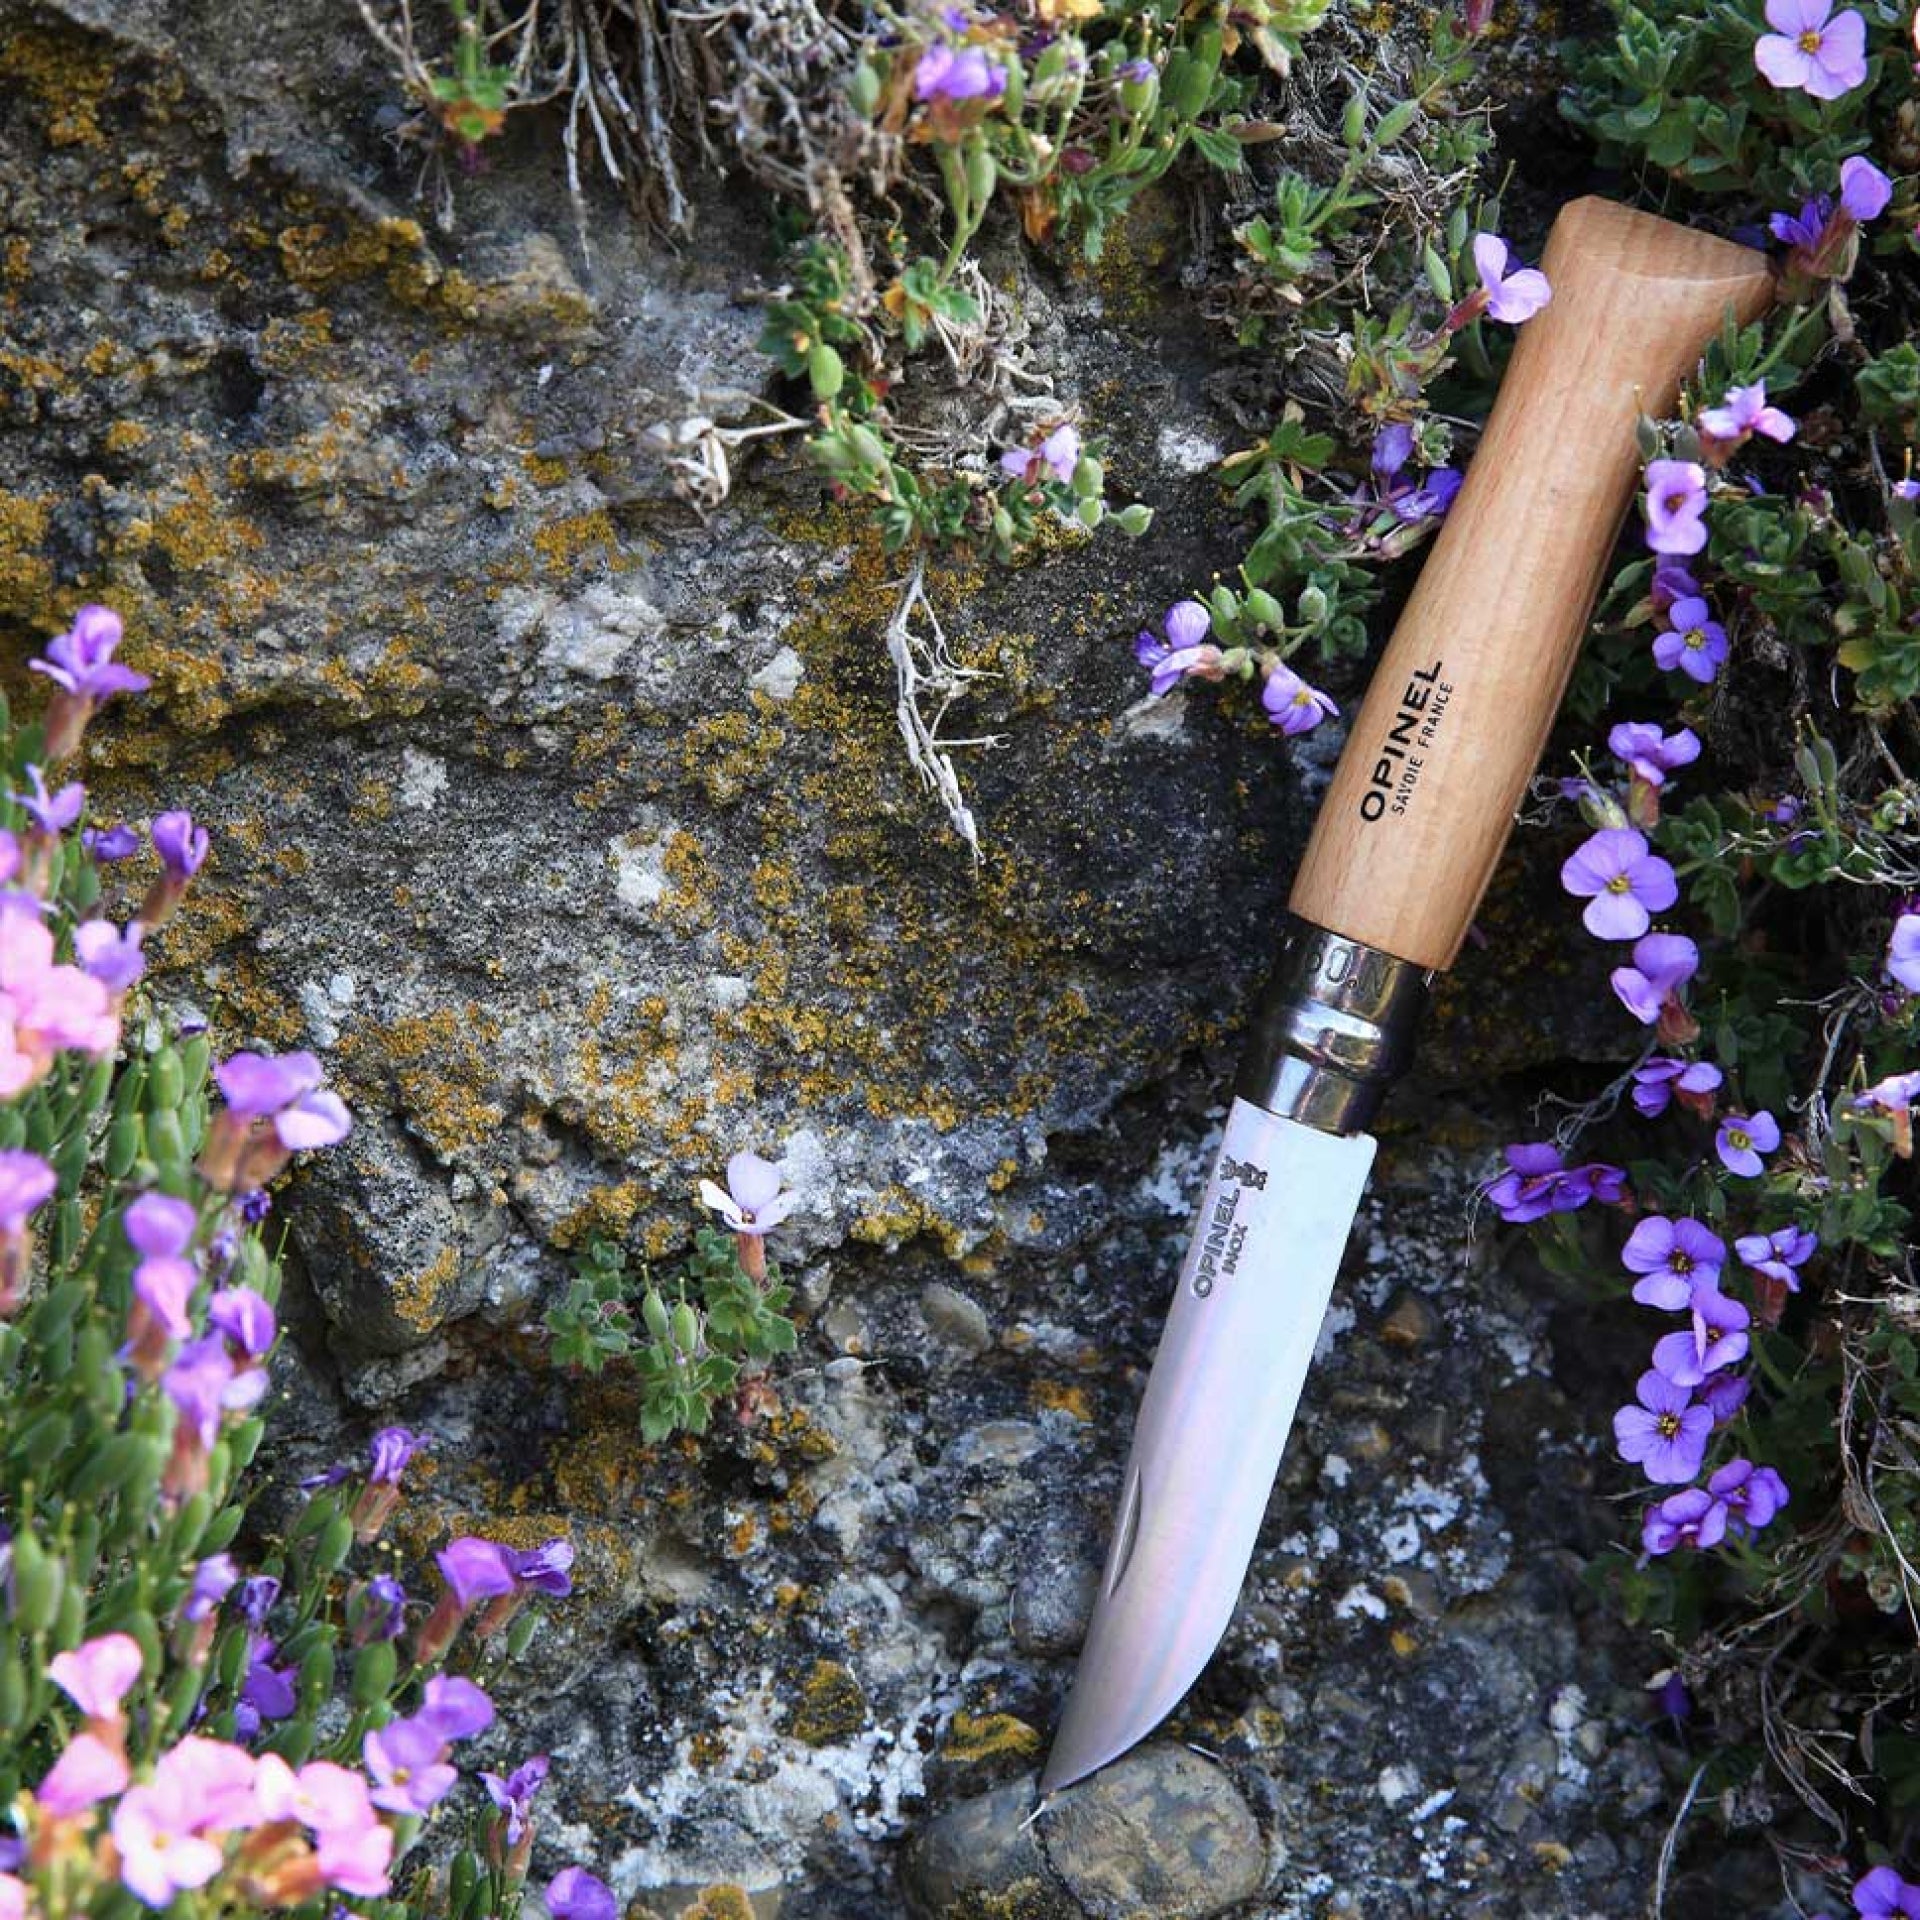 OPINEL coltello n. 9 lama inox con blocco - Coltelleria Lionetti